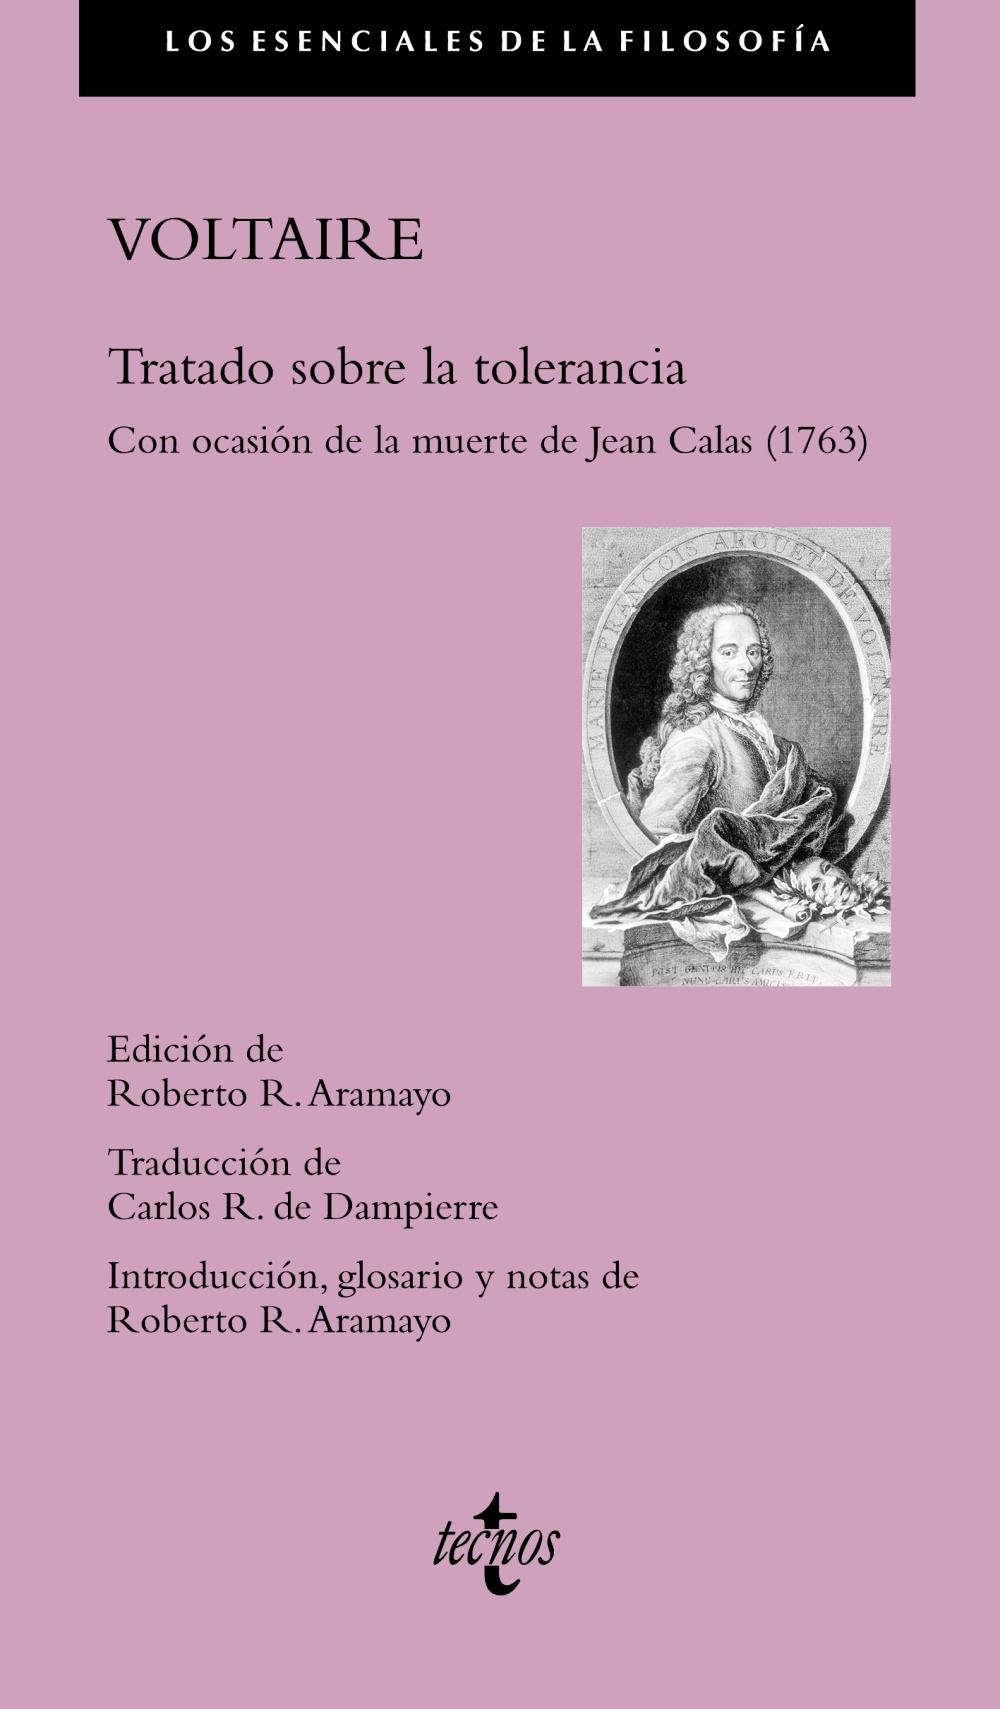 Tratado sobre la tolerancia "Con ocasión de la muerte de Jean Calas (1763)"